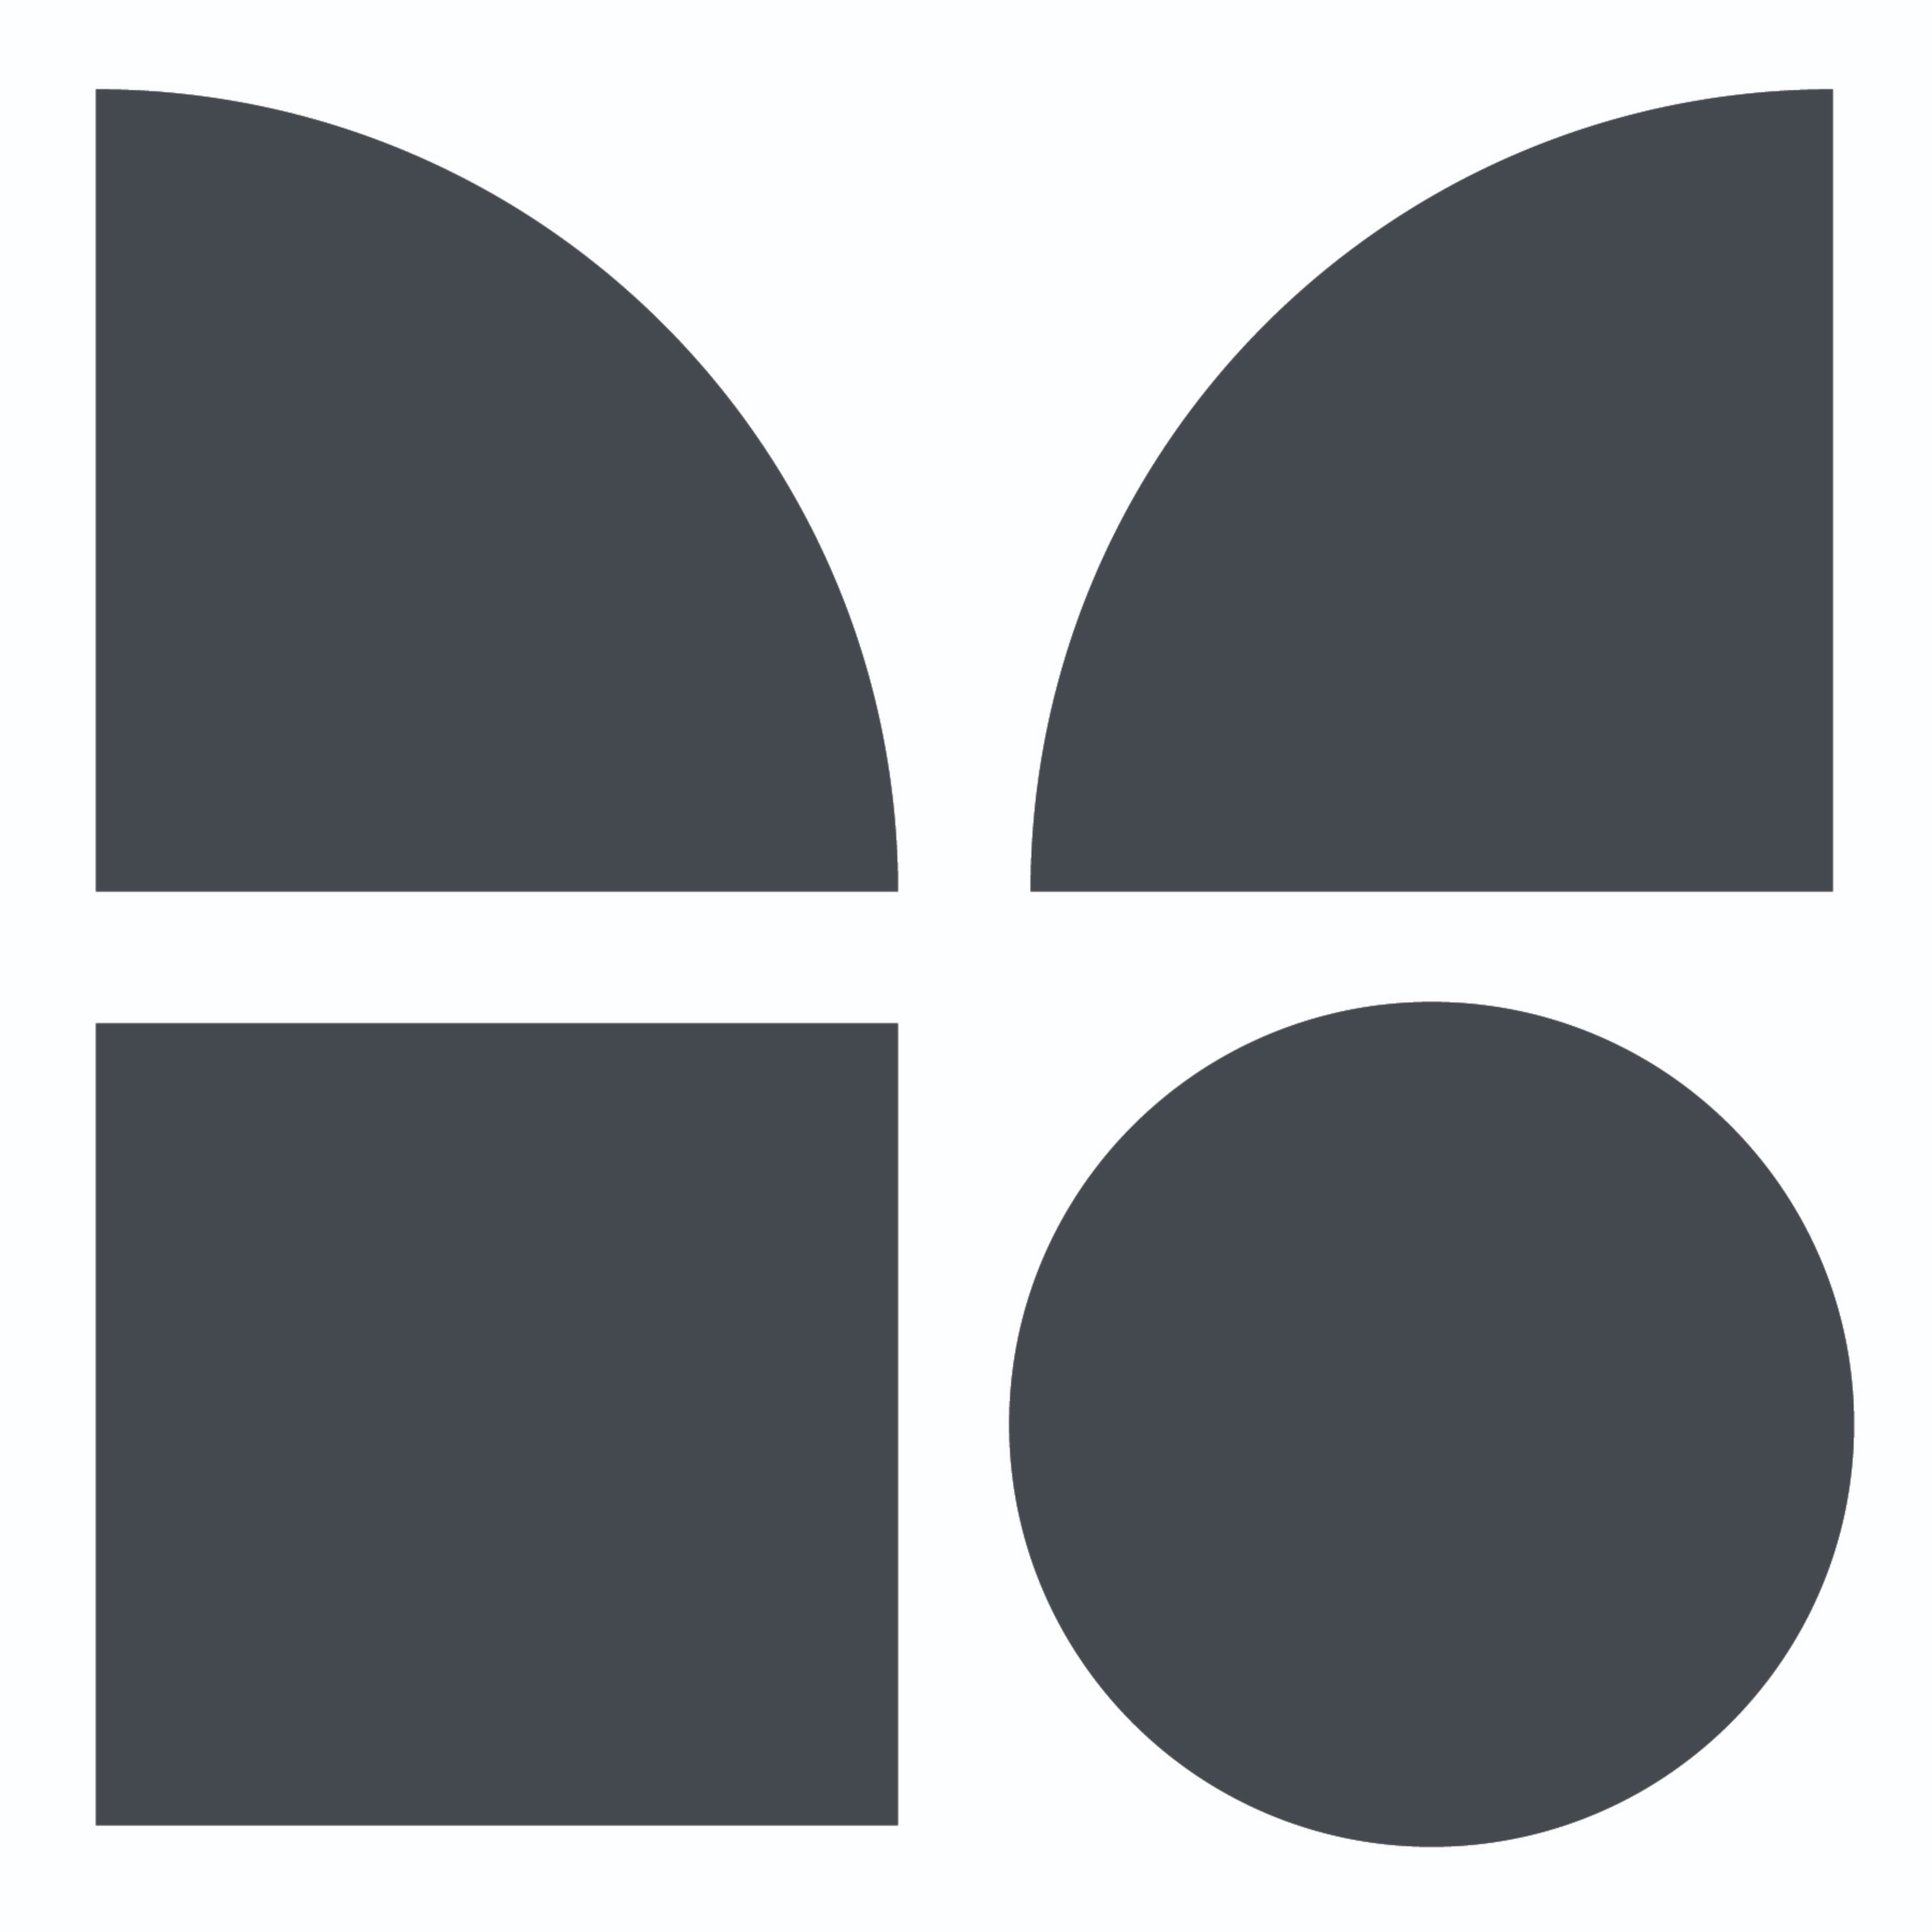 The Modern Data Company's logo